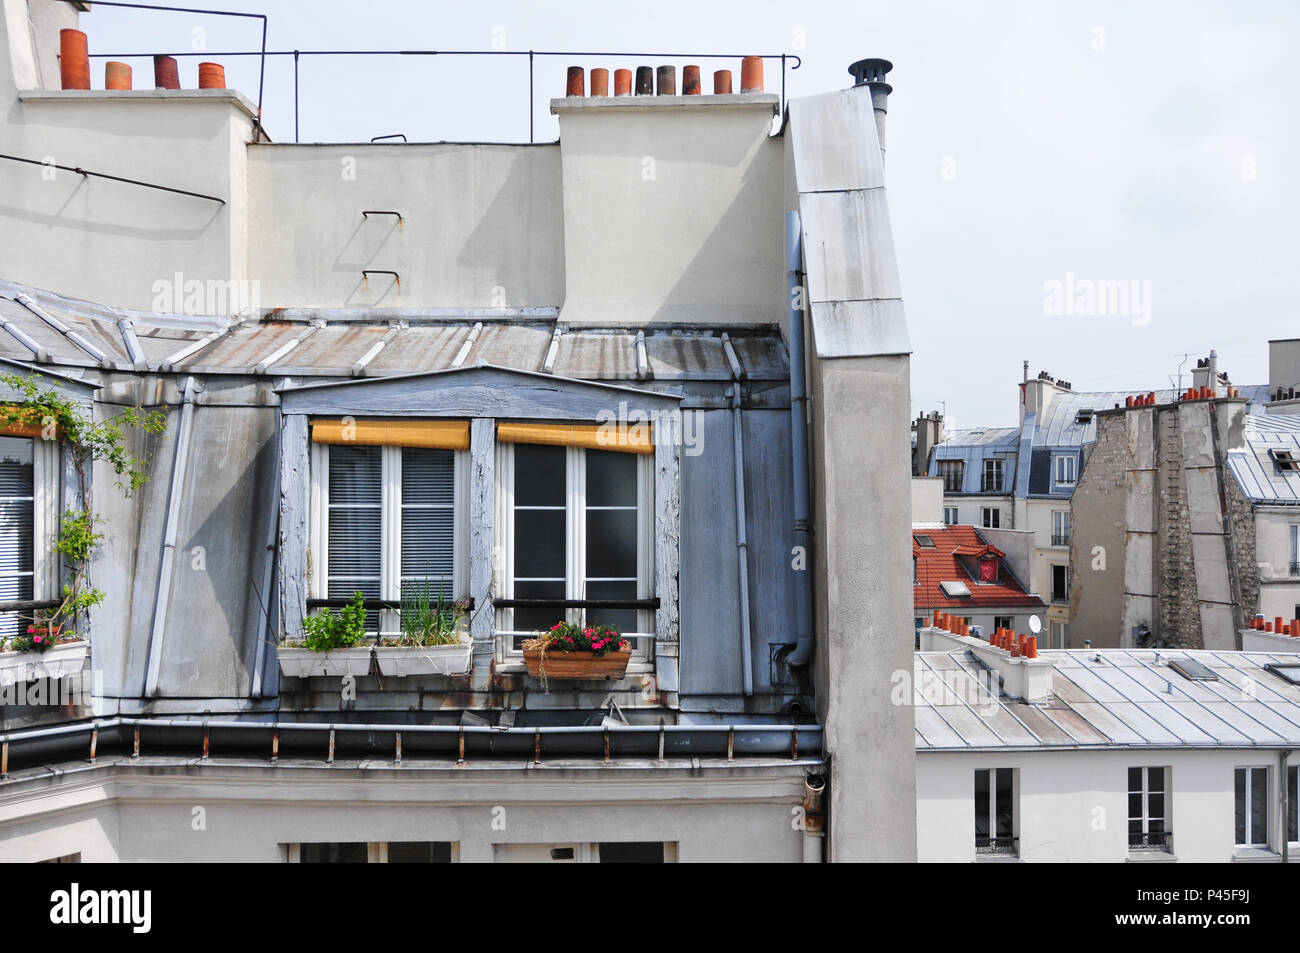 Rooftops à Paris : nos 5 coups de cœur de l'été - Le Parisien